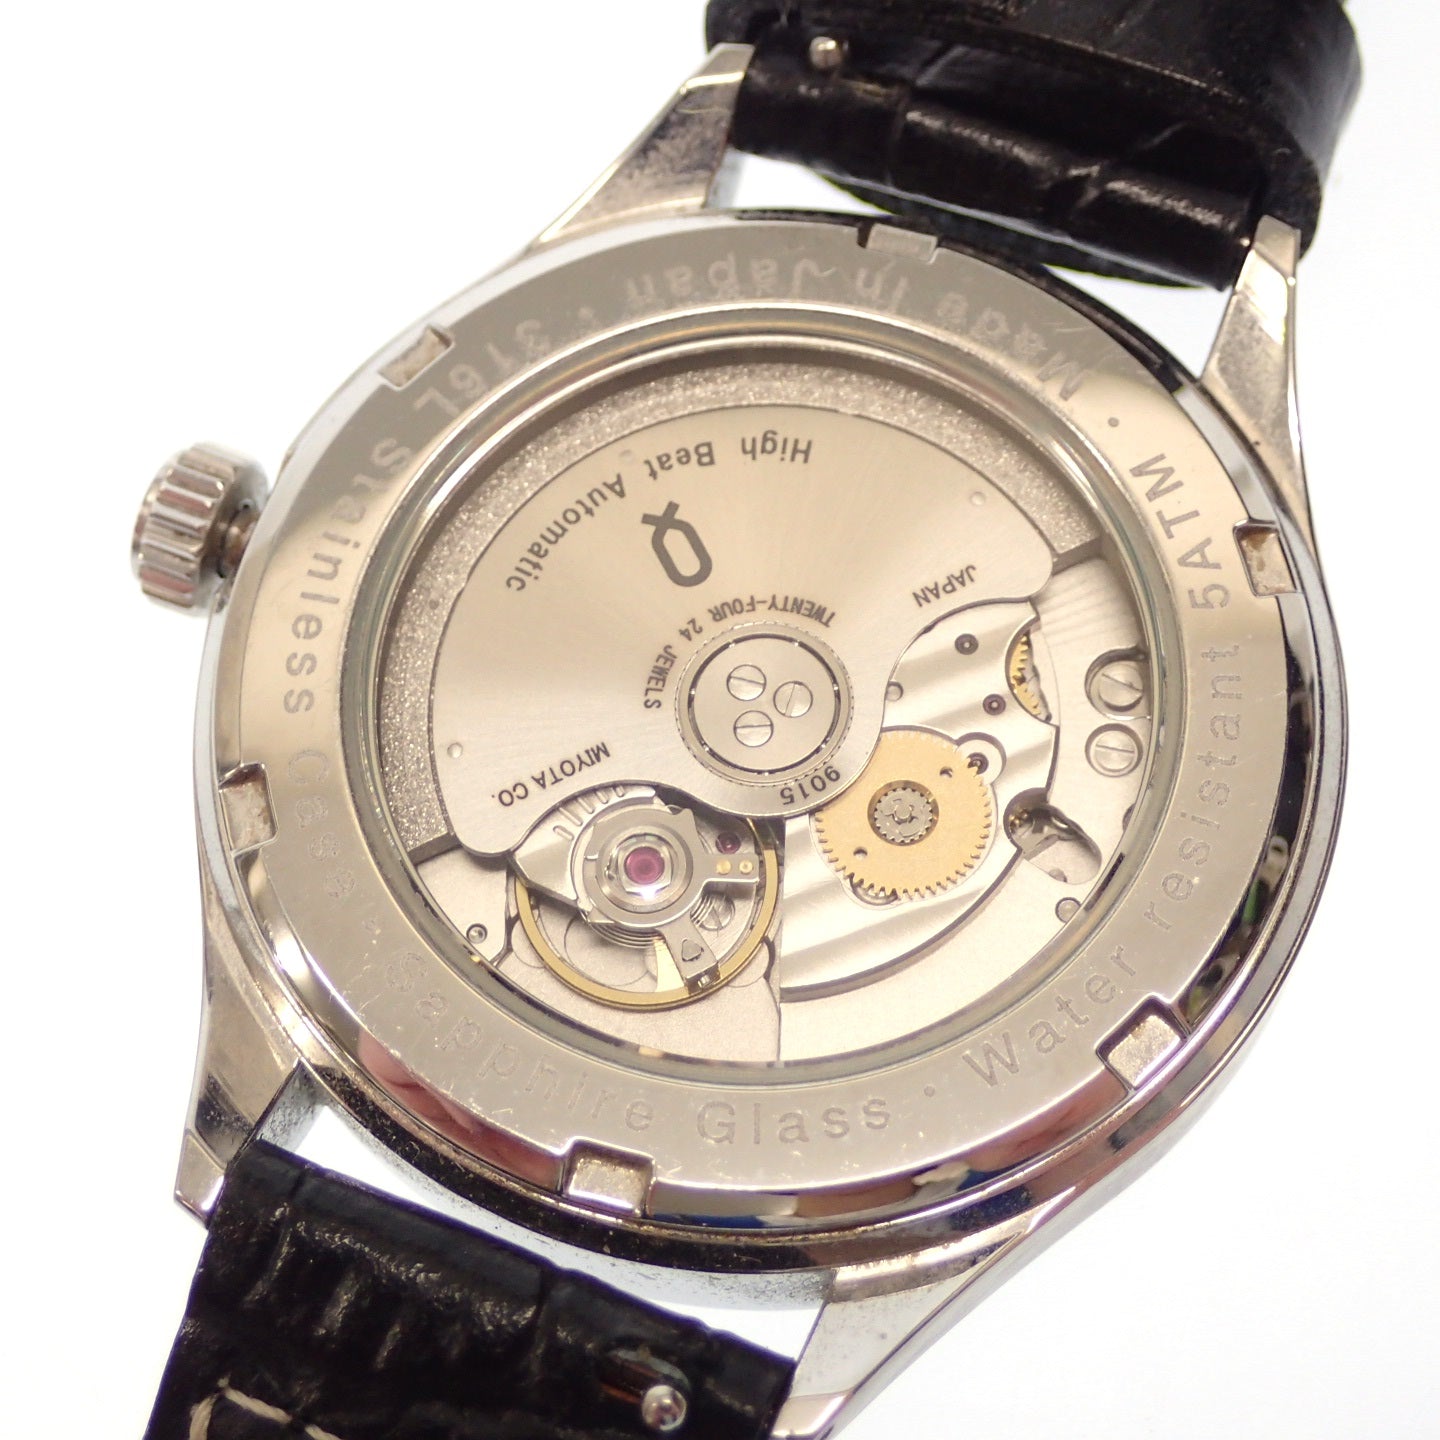 極美品◆ノット 腕時計 自動巻き 裏スケ 文字盤白 316L クロコベルト 箱付き Knot【AFI18】